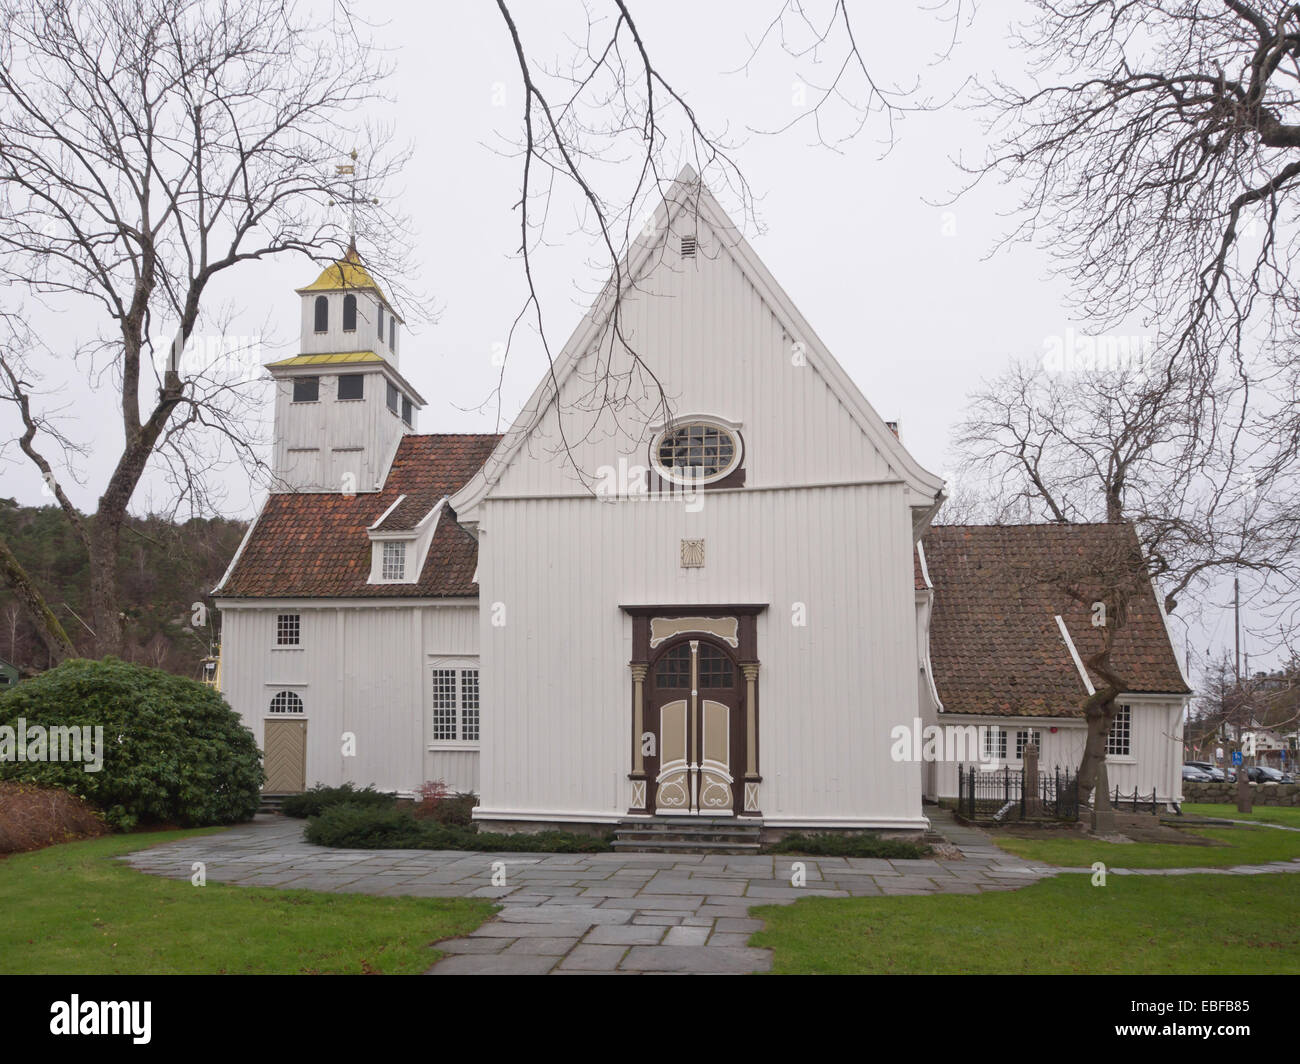 Vieille église luthérienne de lambris de bois dans la petite ville norvégienne Egersund Banque D'Images